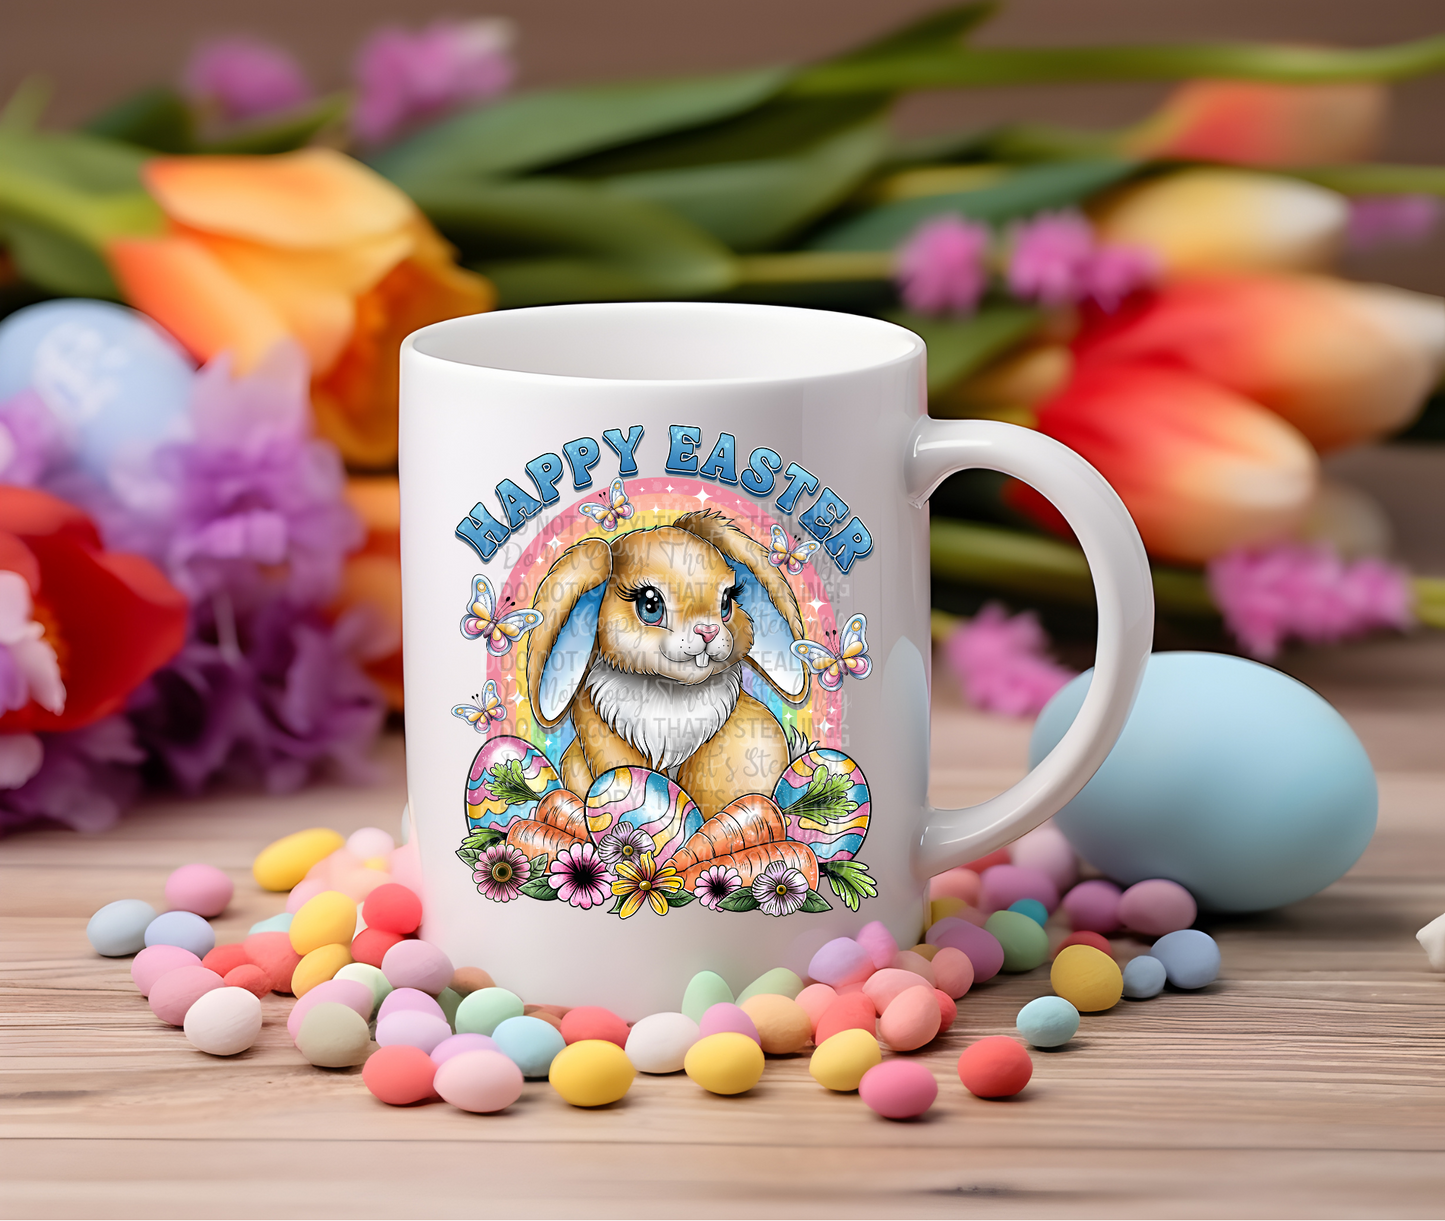 Happy easter bunny coffee mug. -Mayan Sub shop